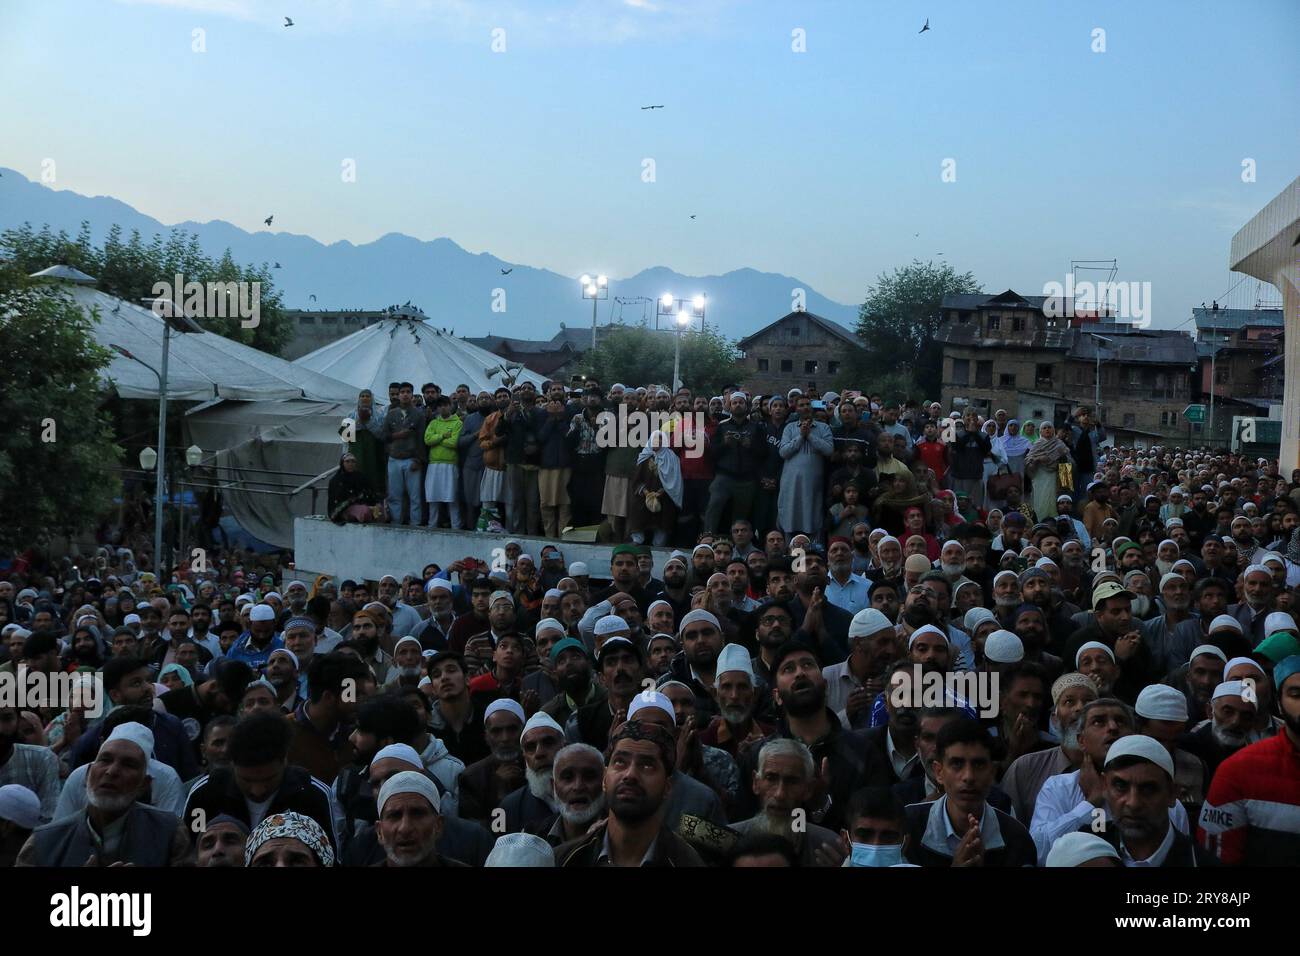 29 septembre 2023, Srinagar Cachemire, Inde : les gens prient alors que le chef religieux (invisible) affiche la relique sainte à l'occasion de l'anniversaire de naissance de Mawlid-un-Nabi ou Prophète Muhammad (PBUH) dans le sanctuaire Dargah Hazratbal à Srinagar. Des centaines de milliers de musulmans de tout le Cachemire visitent le sanctuaire Hazratbal à Srinagar pour rendre hommage à l'anniversaire de naissance du prophète Mahomet (PBUH). Le sanctuaire est hautement vénéré par les musulmans cachemiris car il est censé abriter une relique sainte du prophète Mahomet (PBUH). La relique est exposée aux dévots lors des jours islamiques importants tels que le Mawlid Banque D'Images